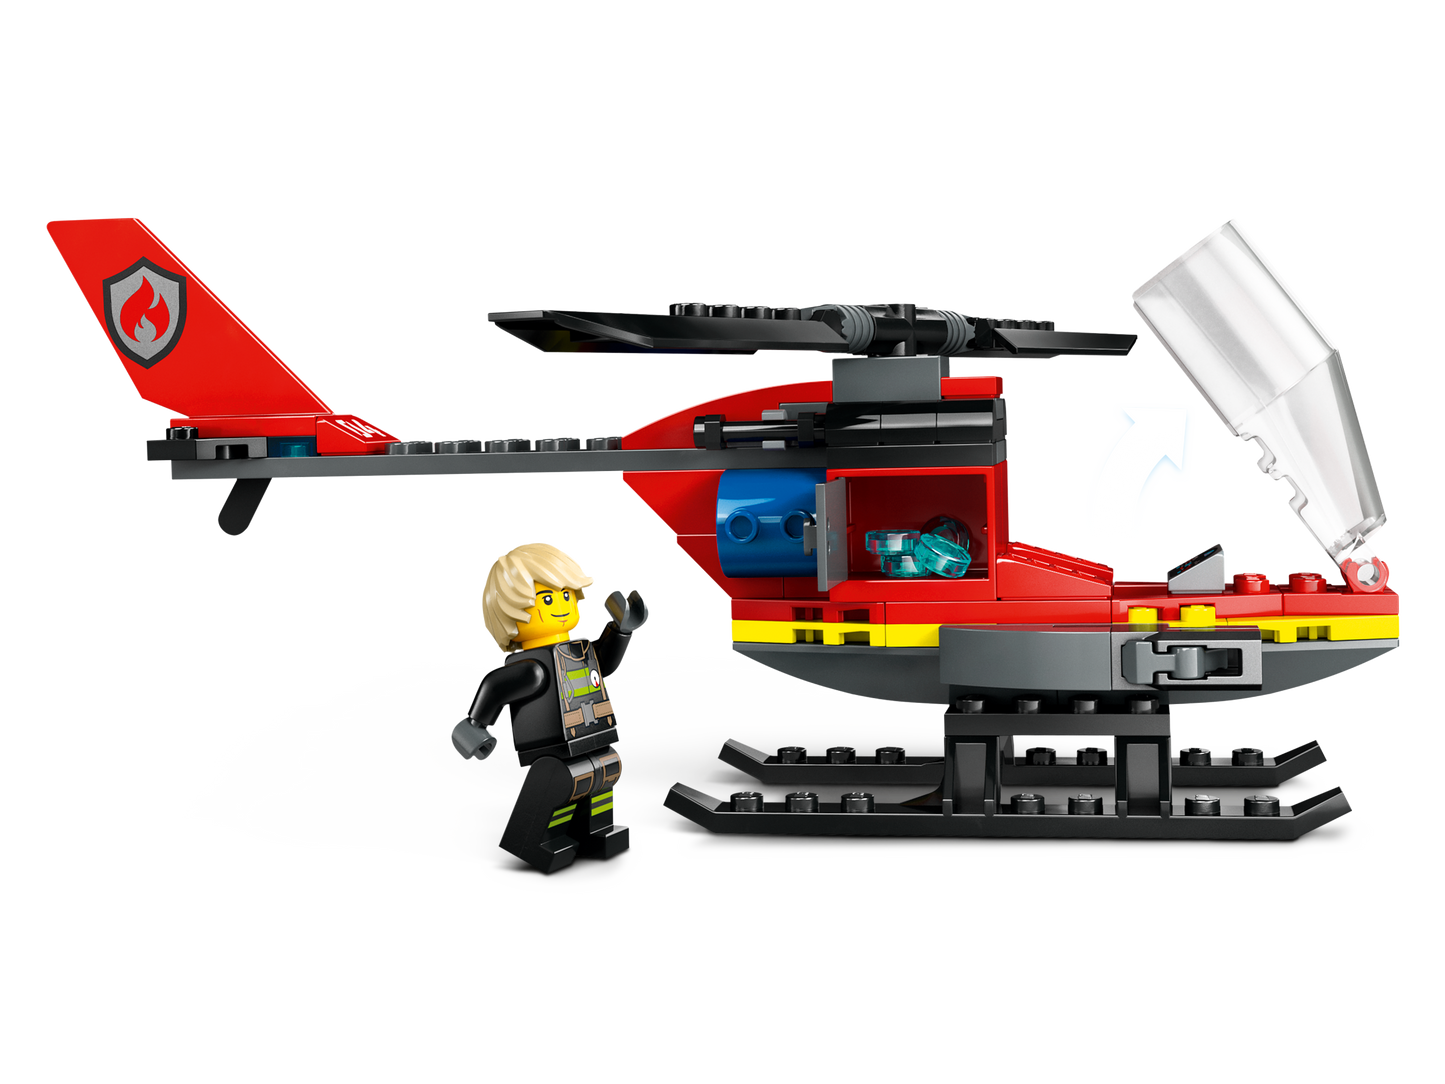 LEGO® set 60411